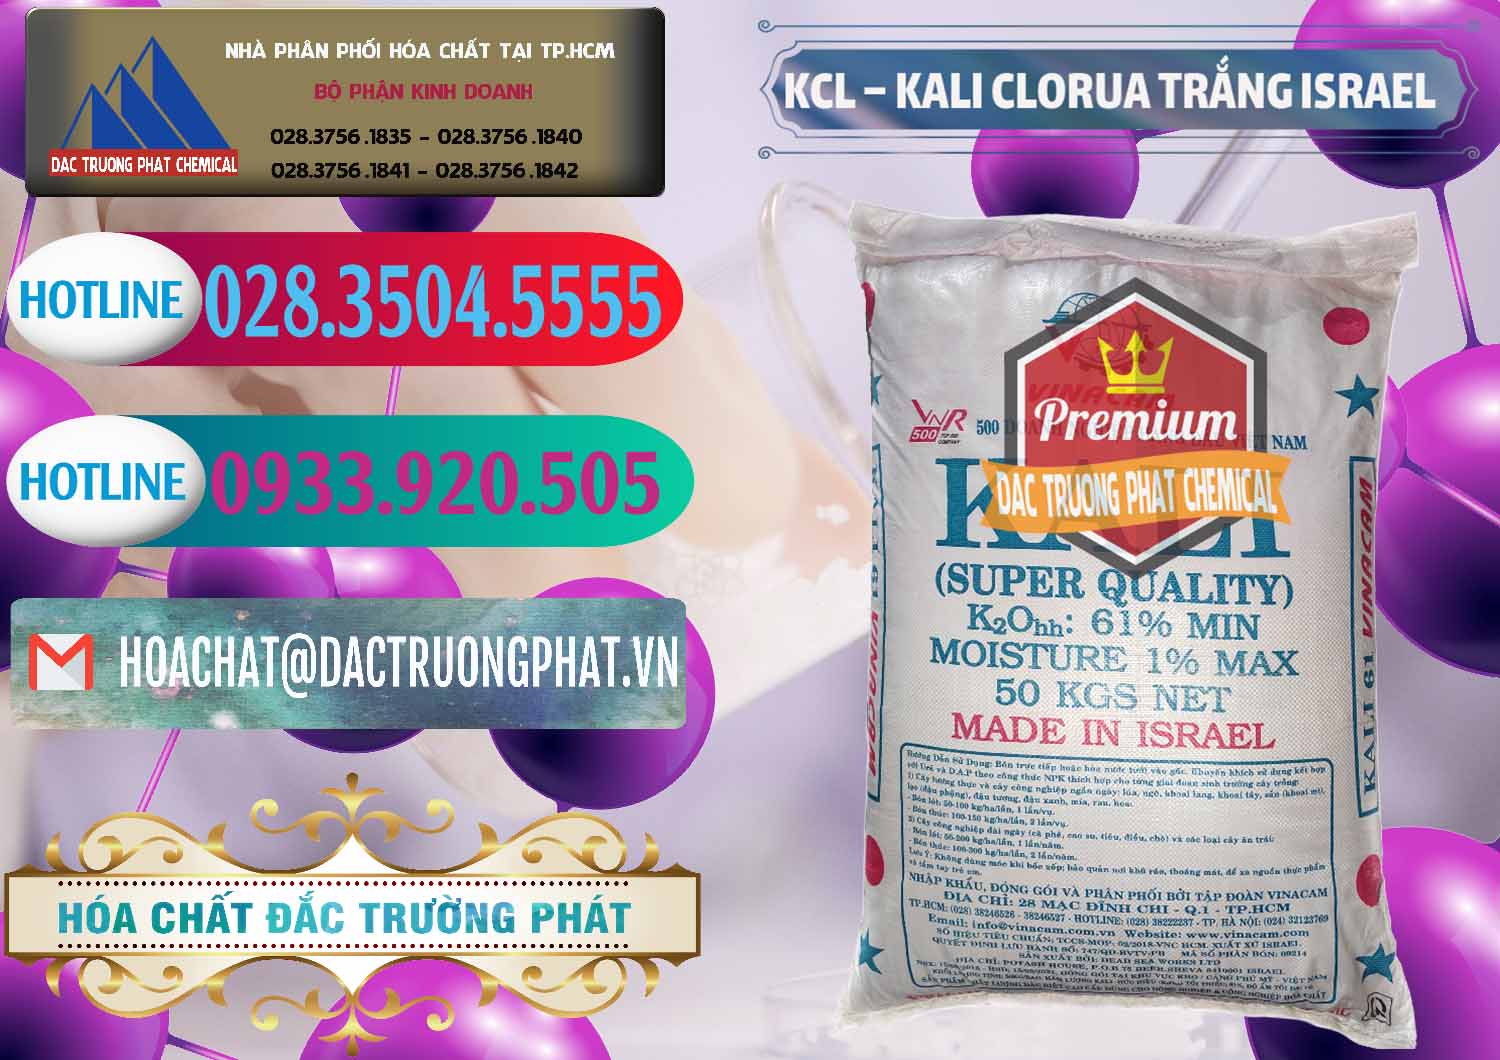 Nơi chuyên nhập khẩu và bán KCL – Kali Clorua Trắng Israel - 0087 - Chuyên cung cấp & phân phối hóa chất tại TP.HCM - truongphat.vn